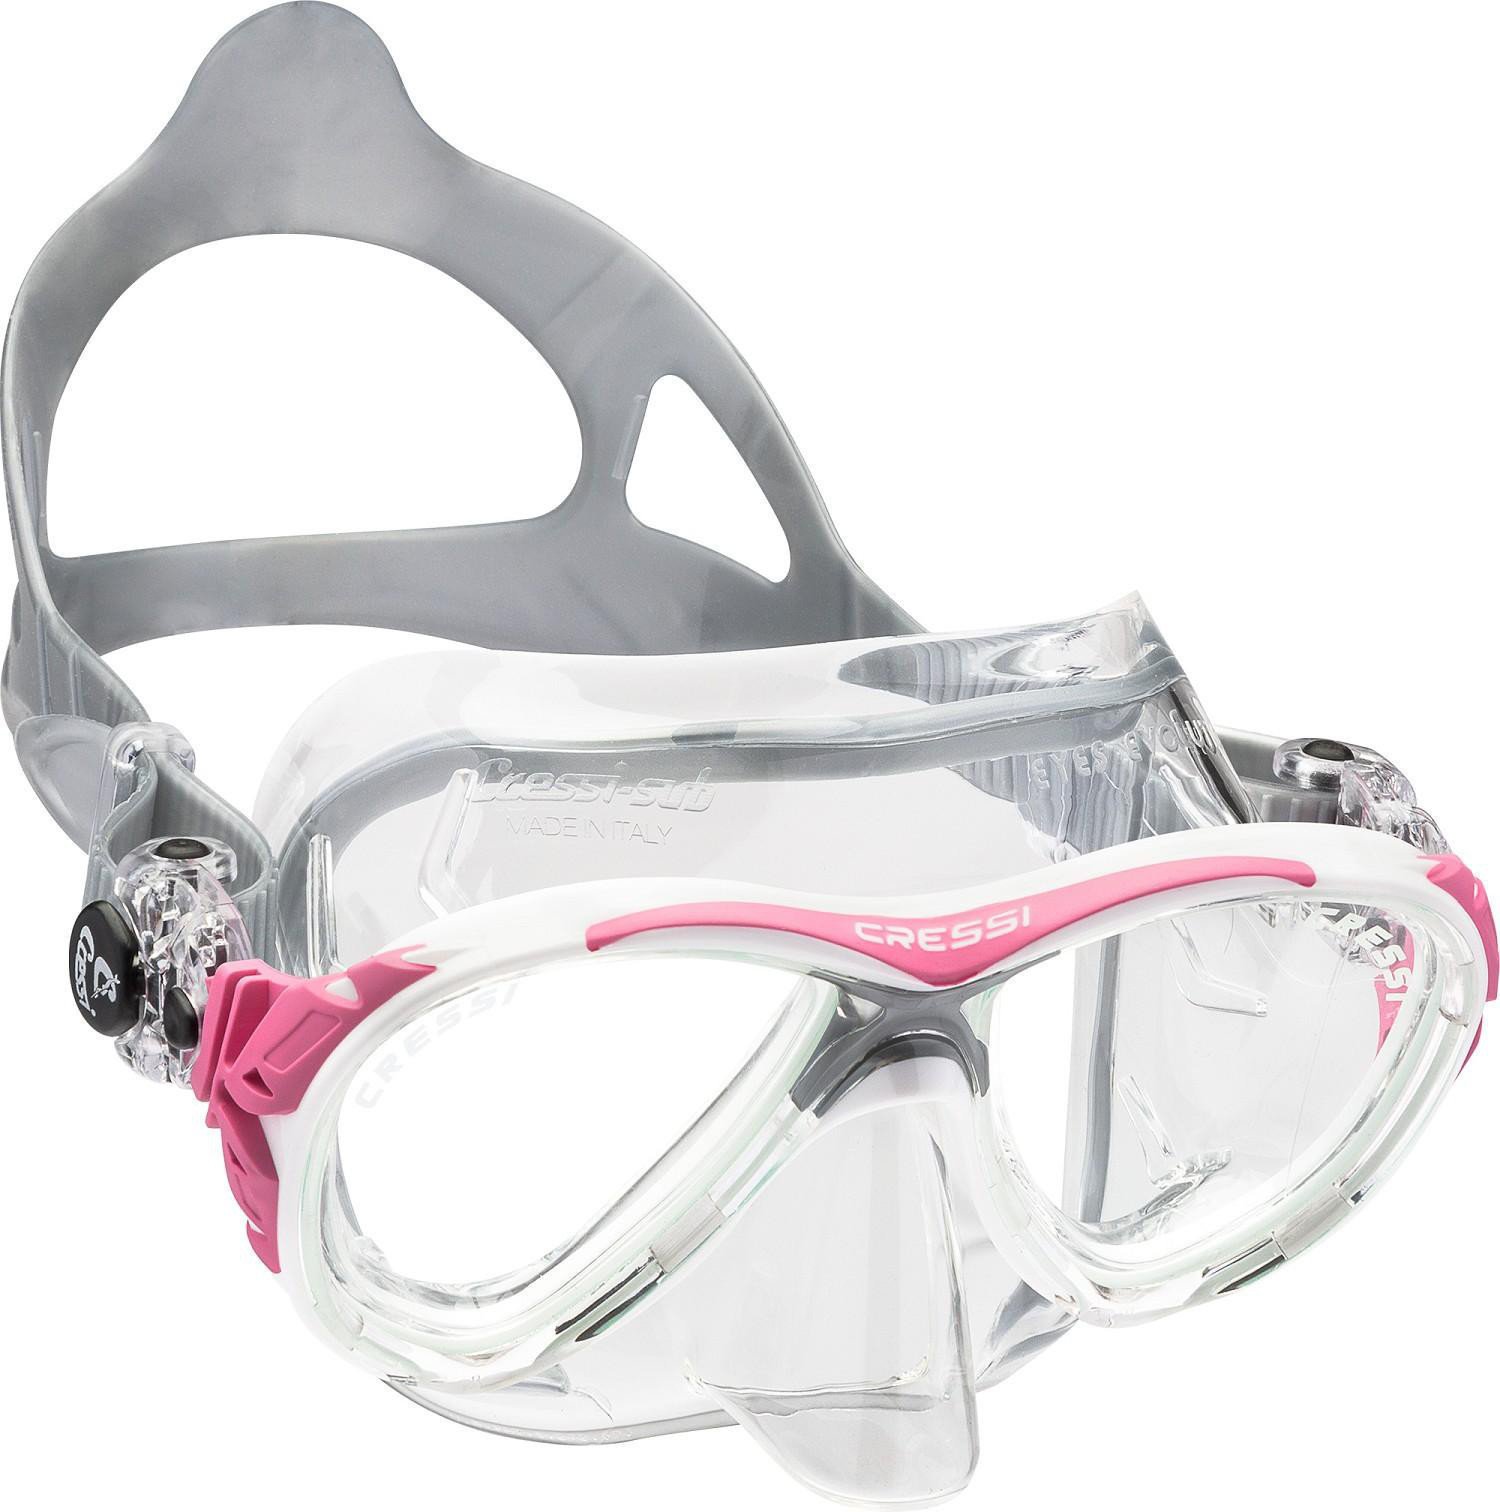 Diving Mask Cressi Eyes Evolution Crystal/Pink